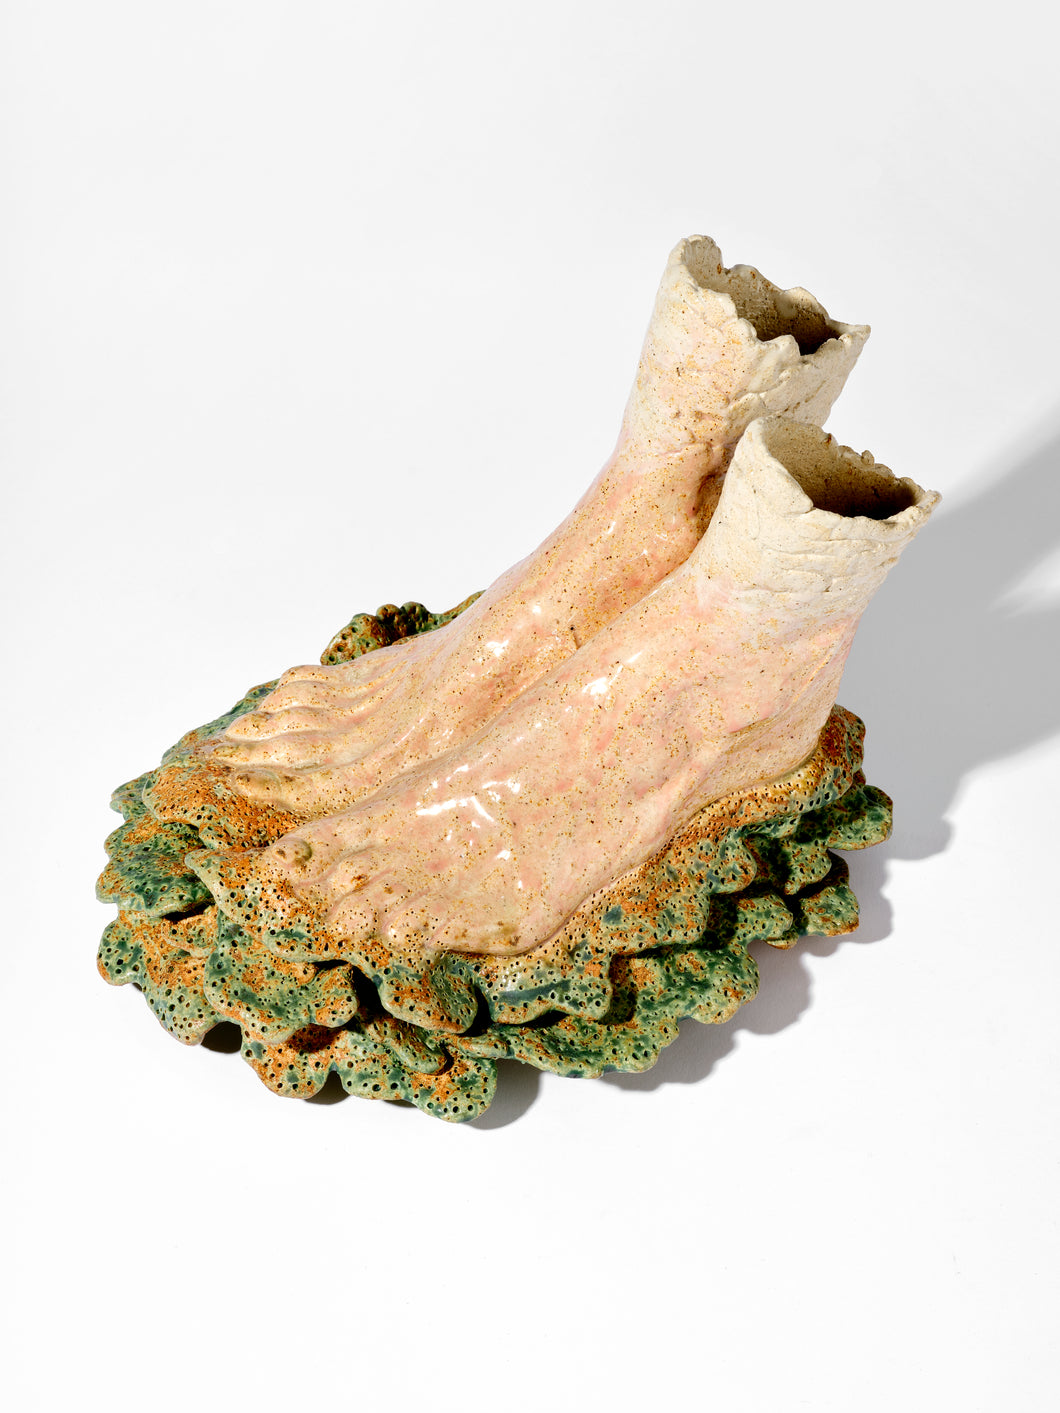 Valérie DELARUE, Frotty foots , Grès émaillé, 36 x 30 cm, 2015 © Valérie Delarue